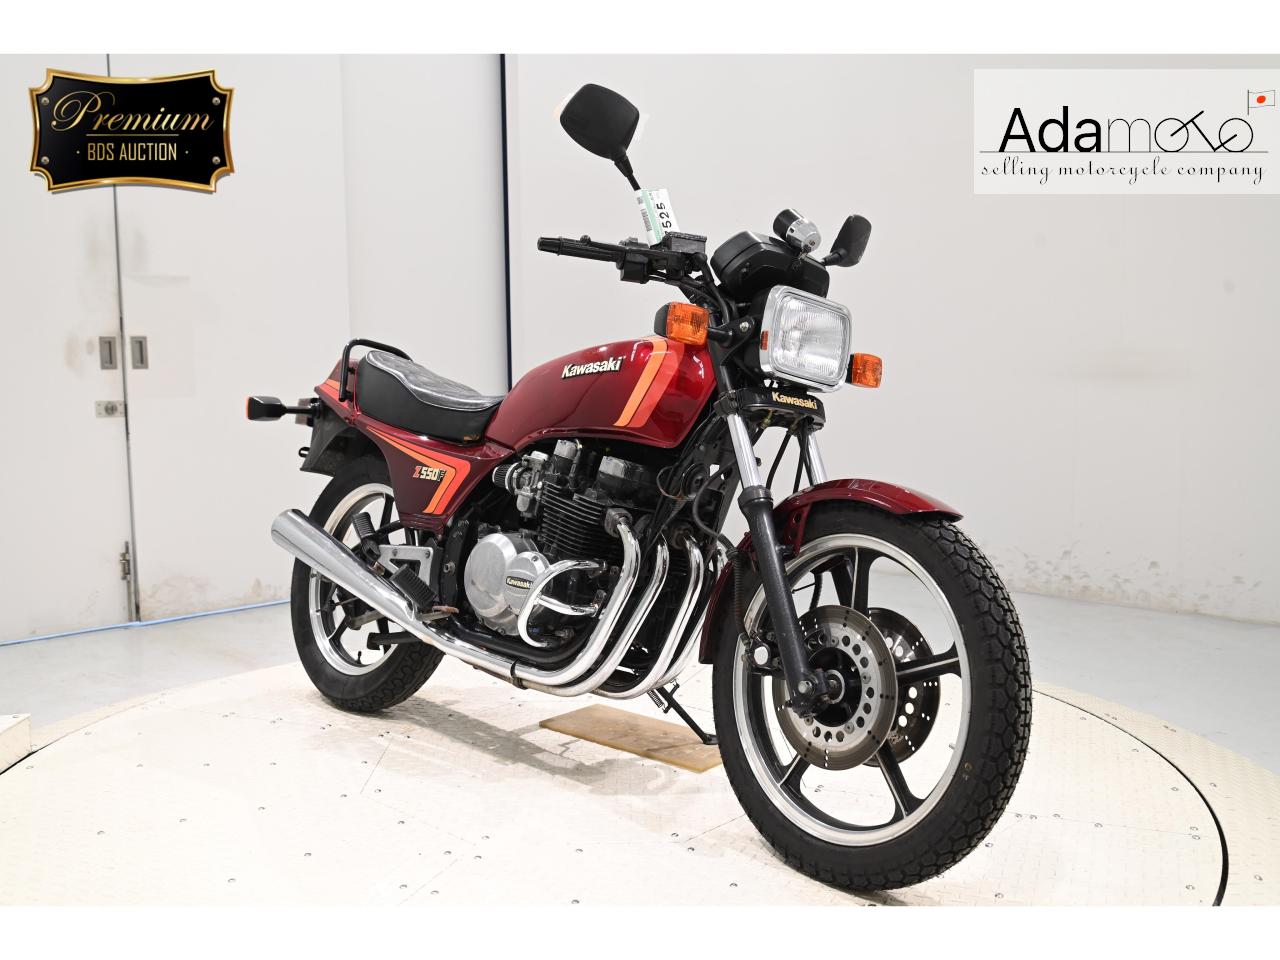 Kawasaki Z550F - Adamoto - Motorcycles from Japan